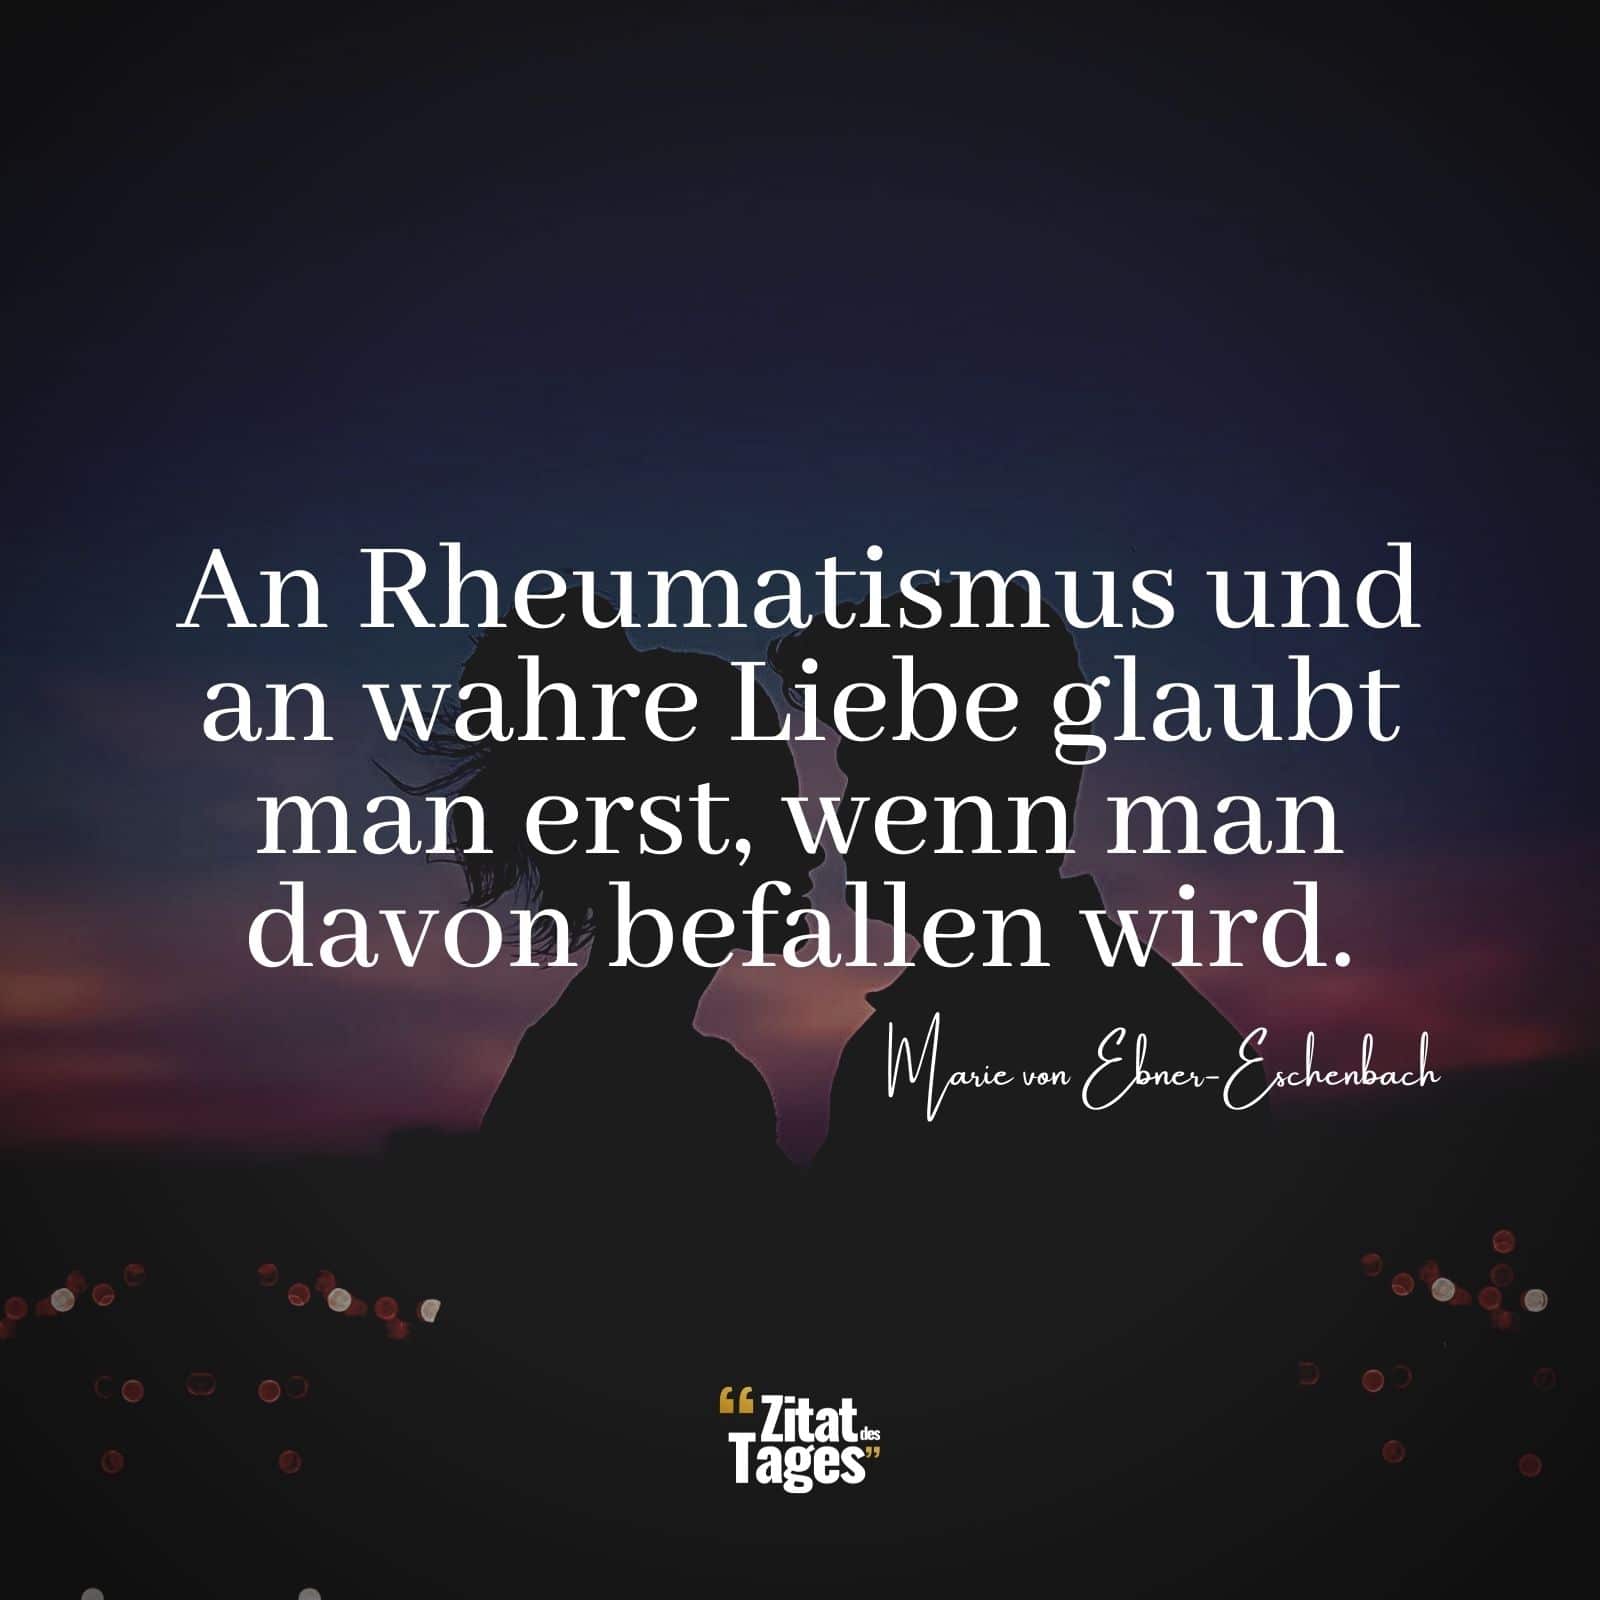 An Rheumatismus und an wahre Liebe glaubt man erst, wenn man davon befallen wird. - Marie von Ebner-Eschenbach